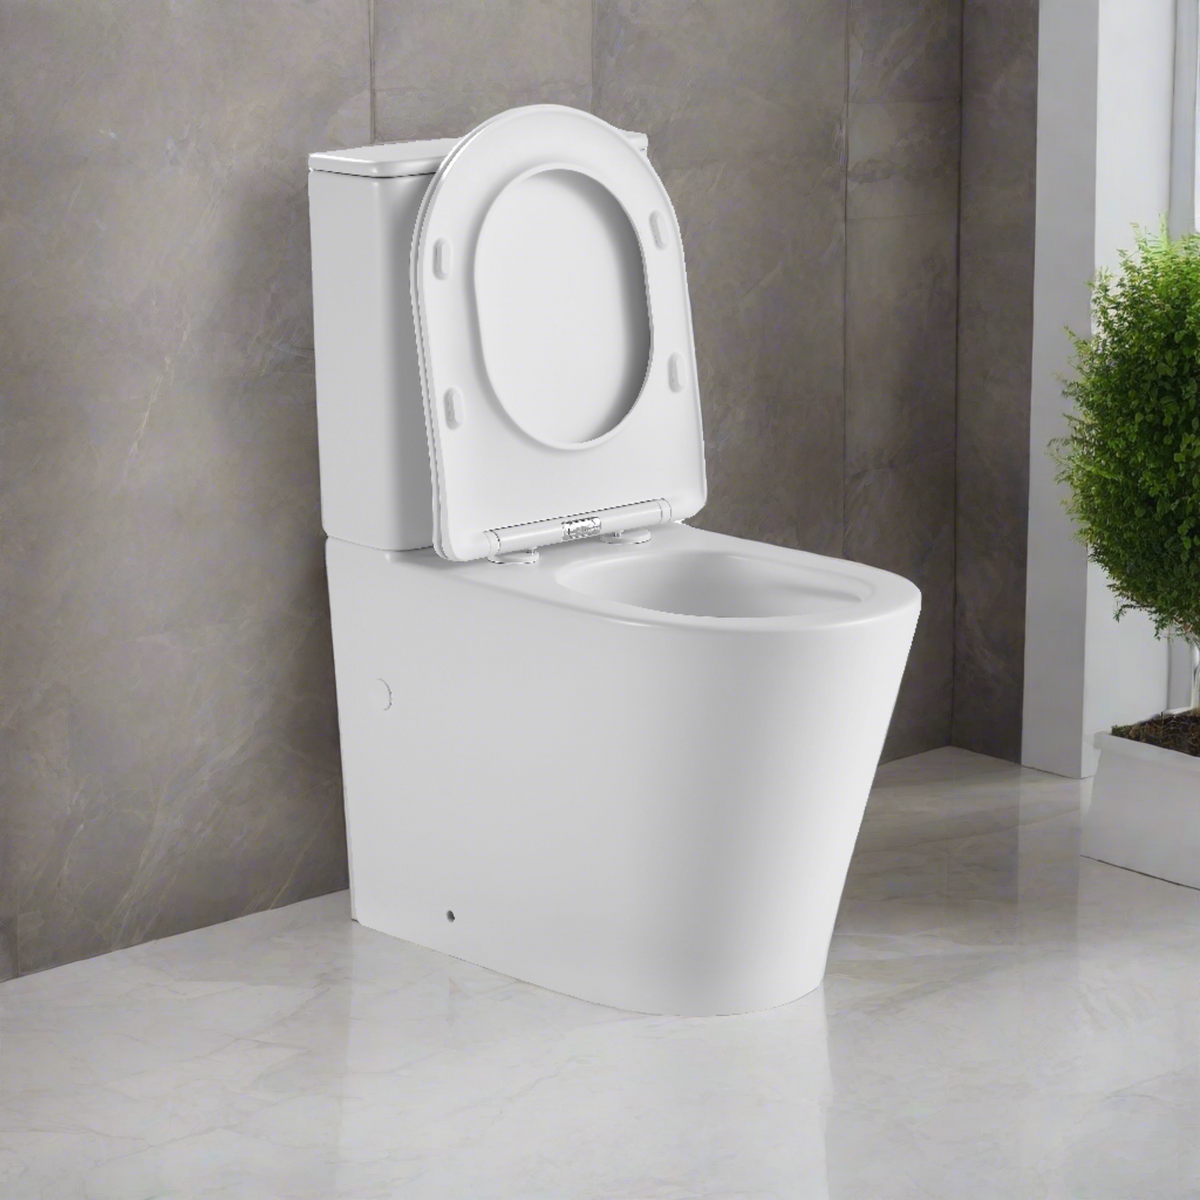 Tornado Zero Rim Back-to-Wall Toilet Suite in Matte White